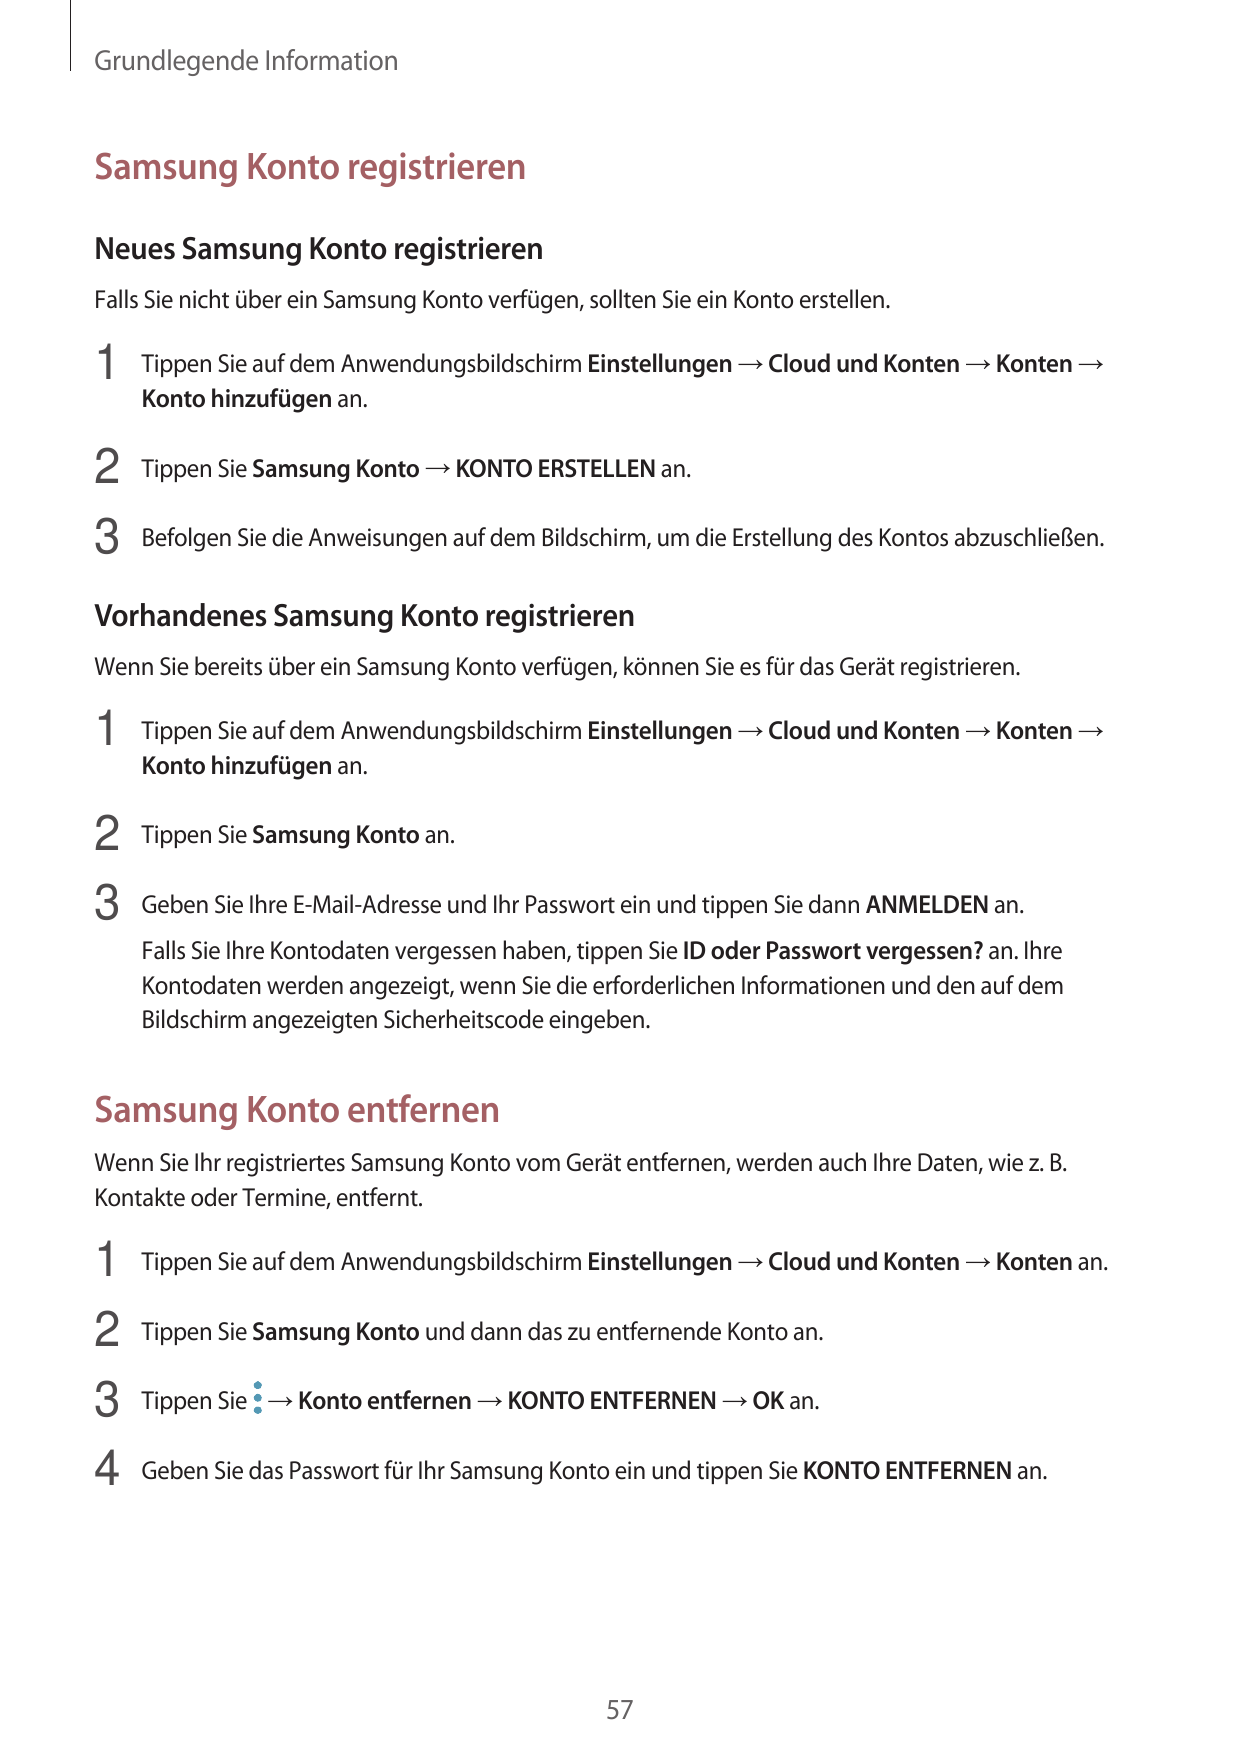 Grundlegende InformationSamsung Konto registrierenNeues Samsung Konto registrierenFalls Sie nicht über ein Samsung Konto verfüge